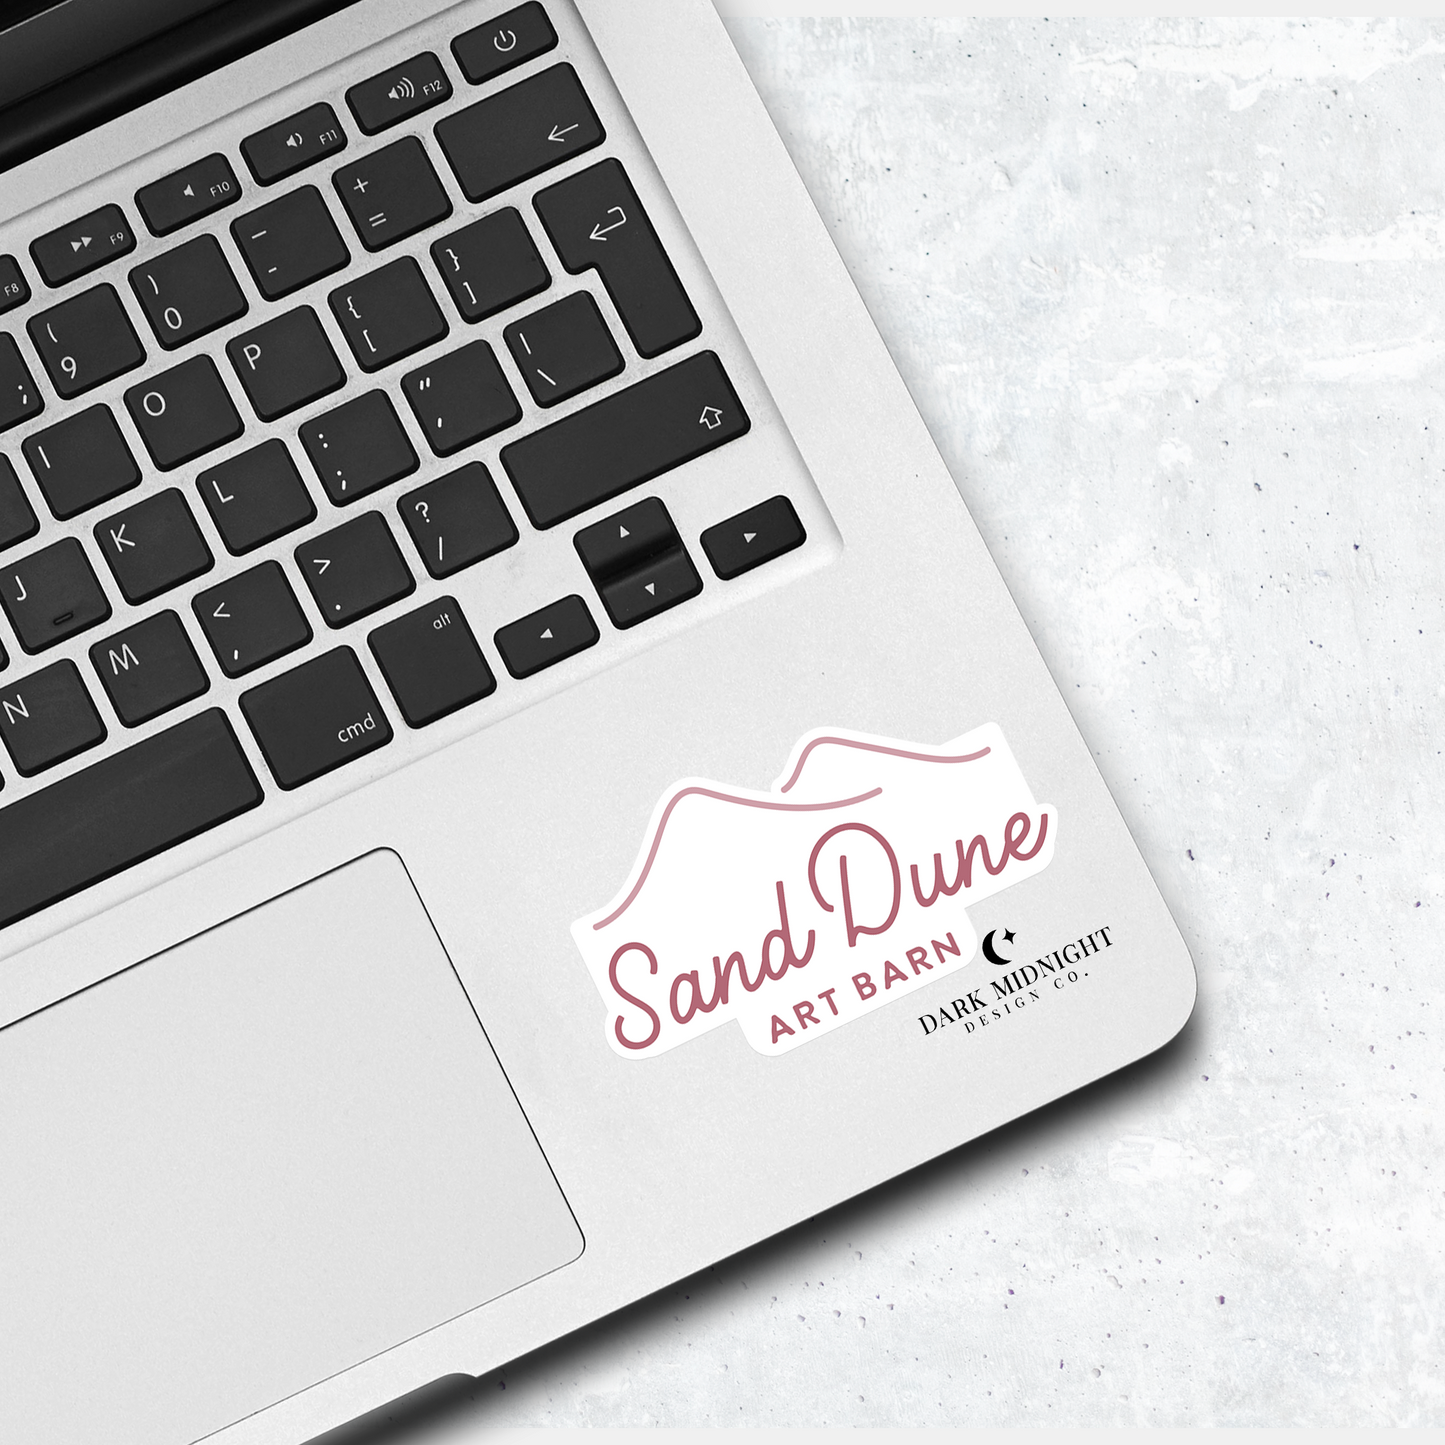 Sand Dune Art Barn Logo Sticker - Officially Licensed Sullivan Family Series